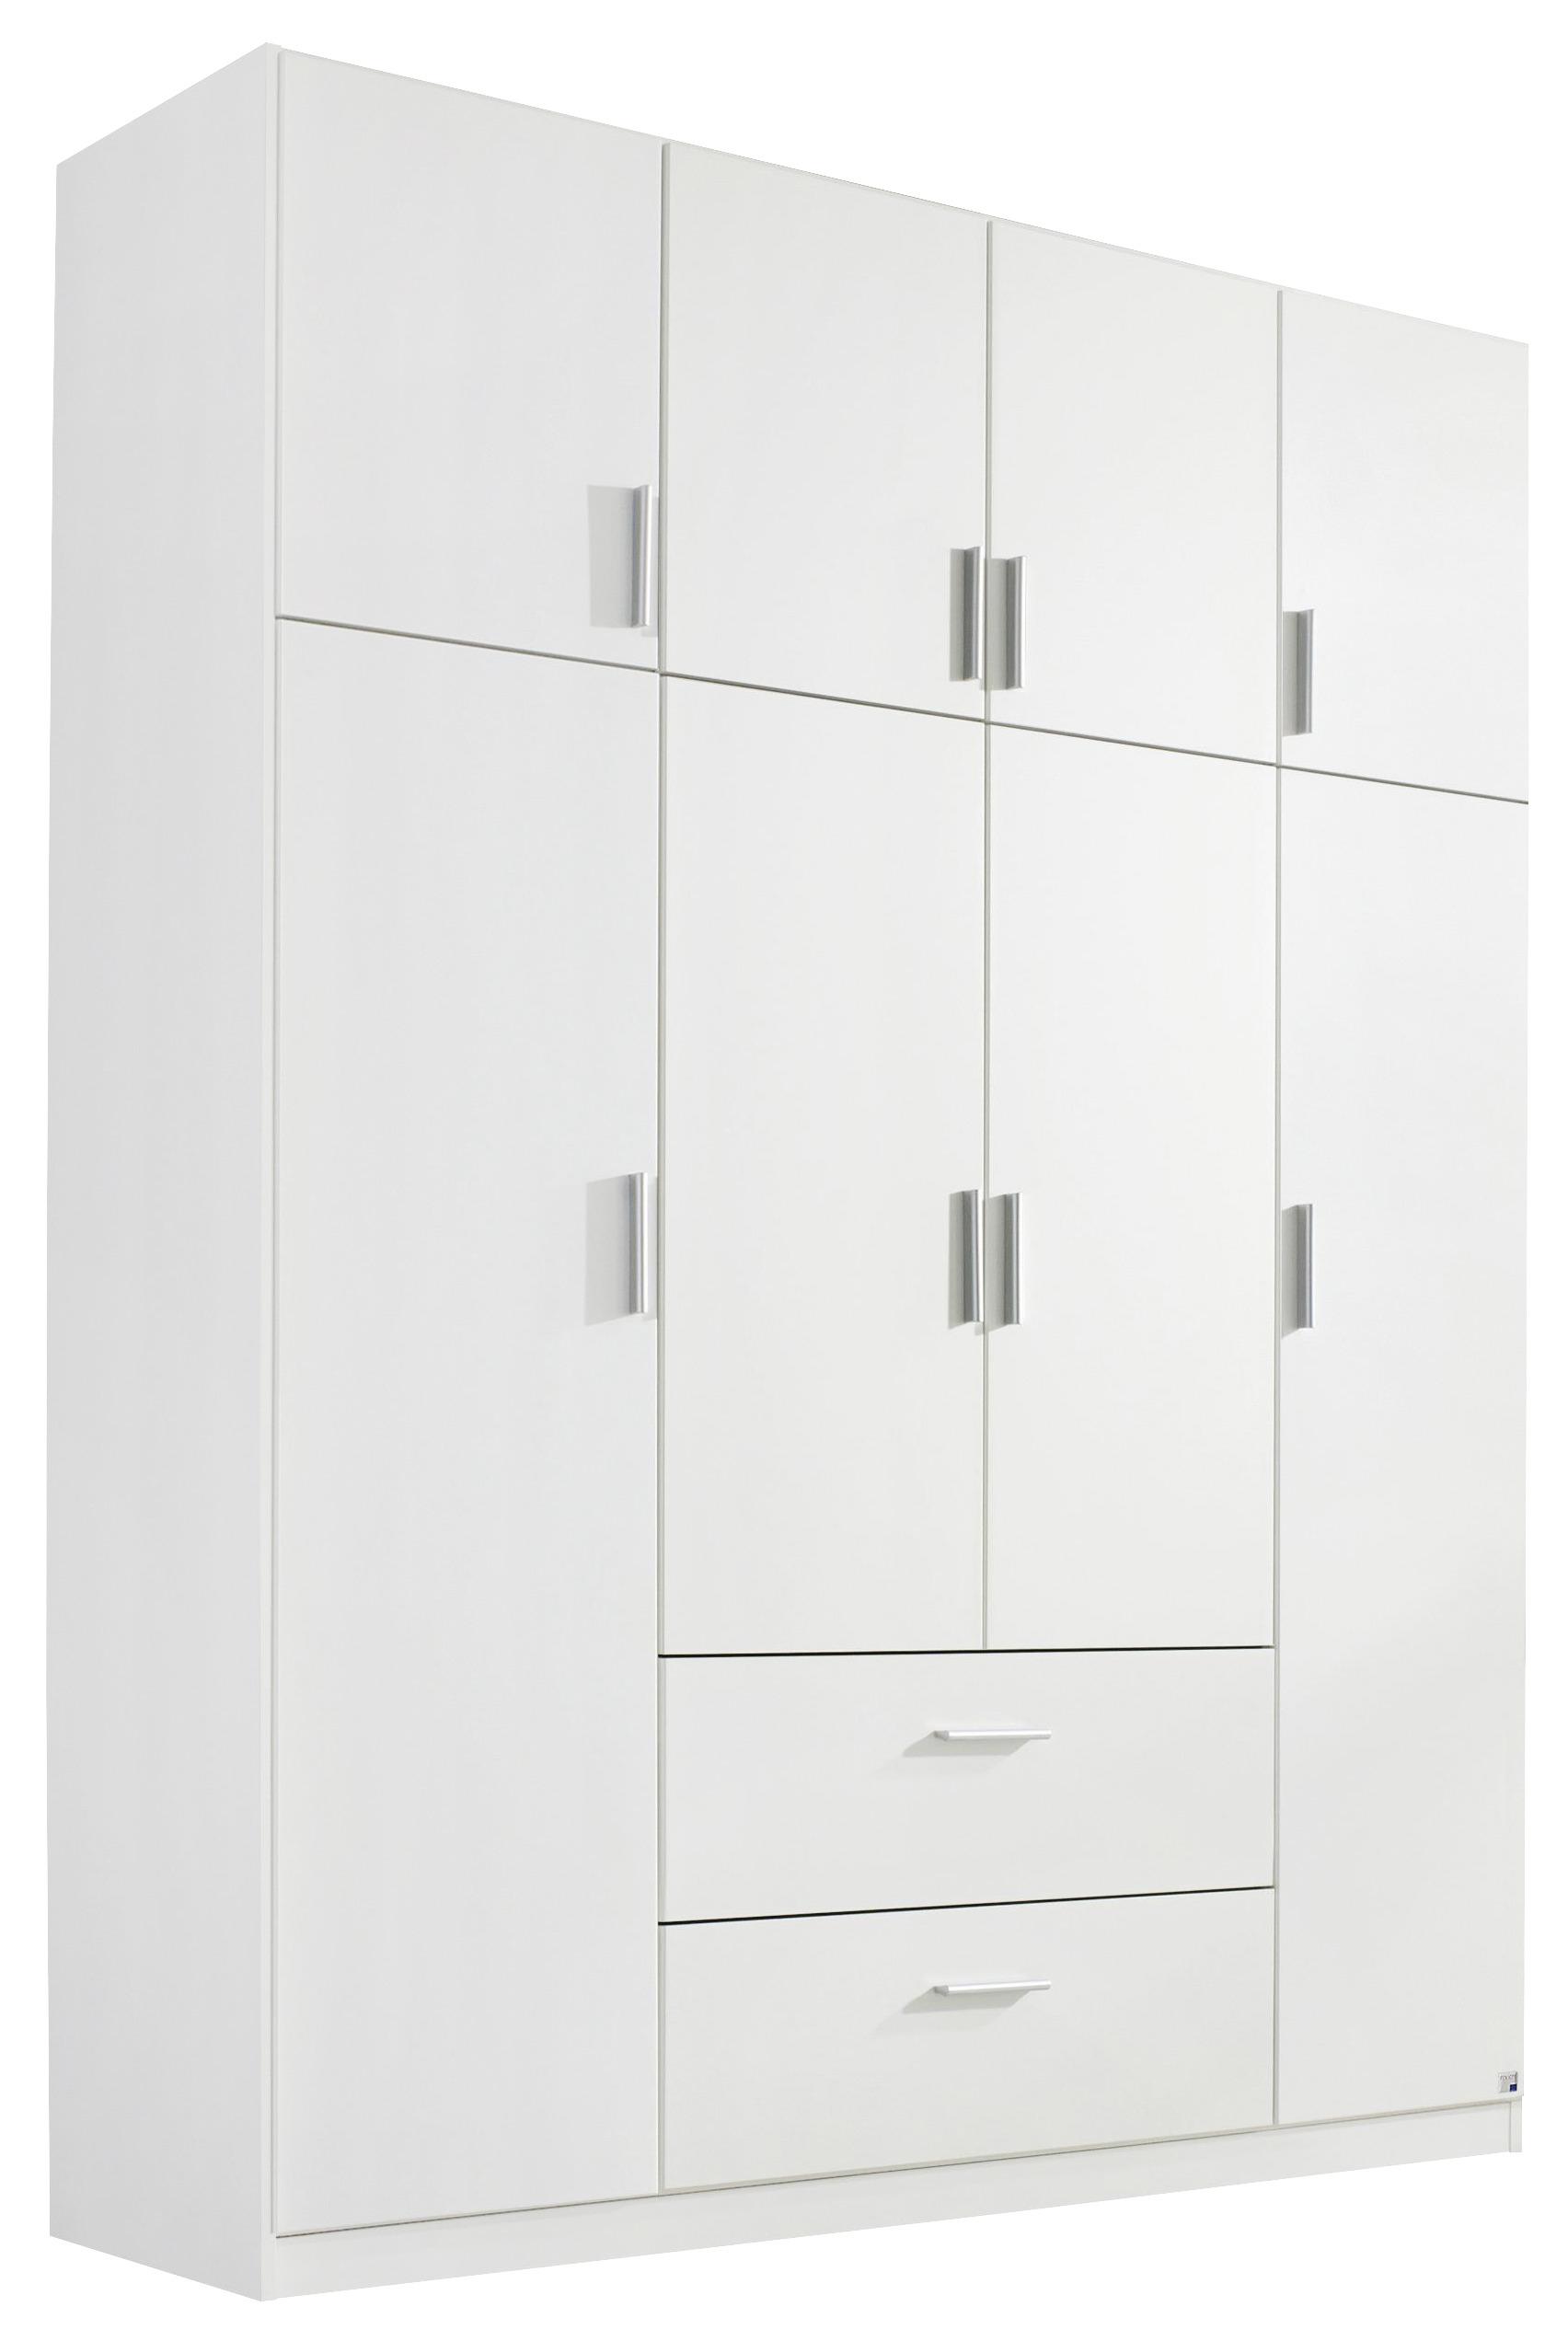 Kombi Ormar Horn - bijela/boje aluminija, Konventionell, drvni materijal/plastika (181/229/54cm) - Modern Living